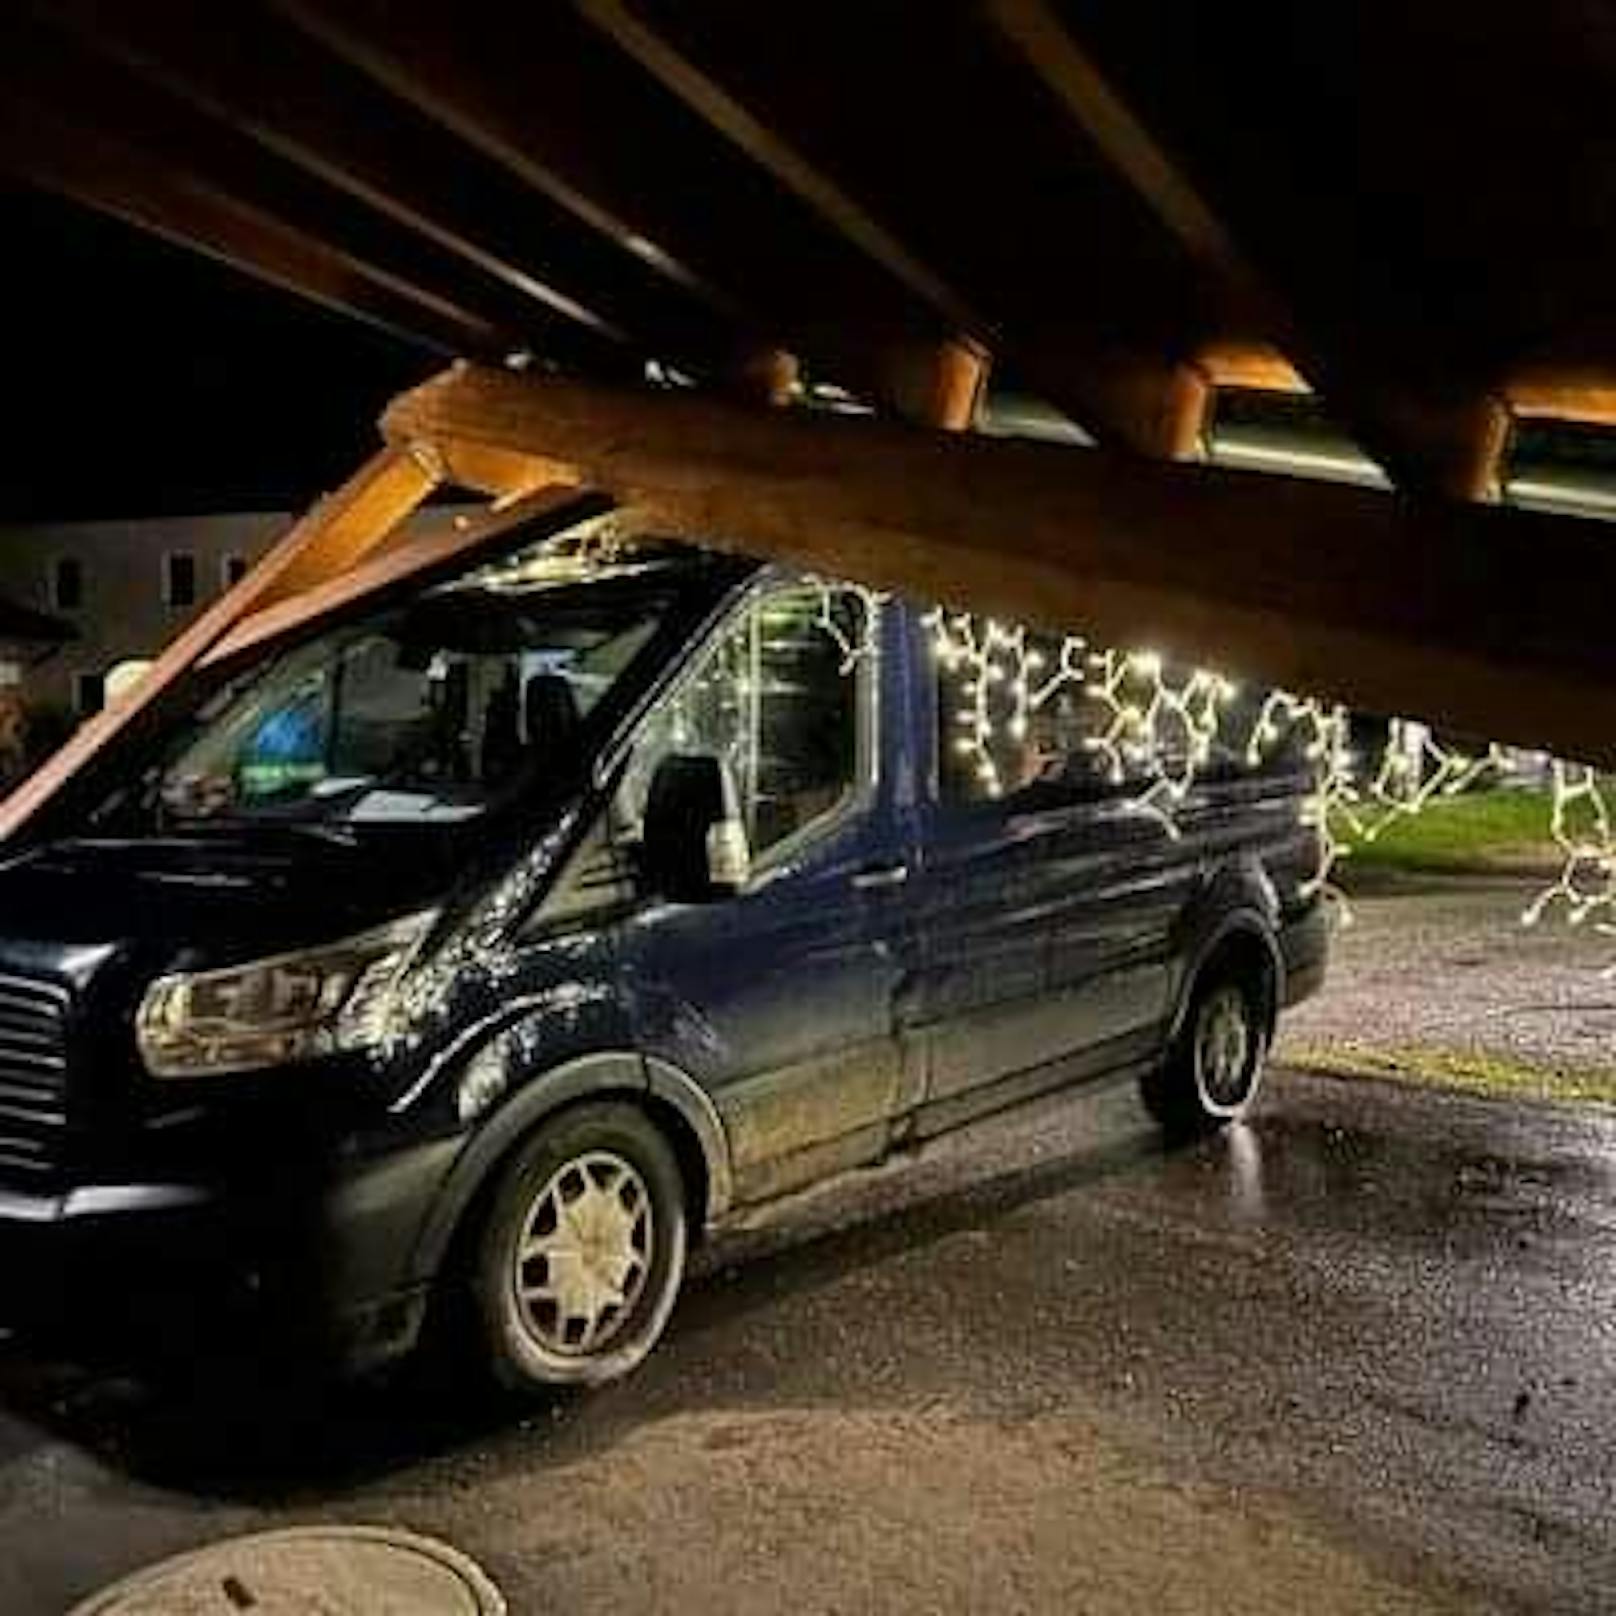 Carport stürzte bei Crash auf Kleinbus